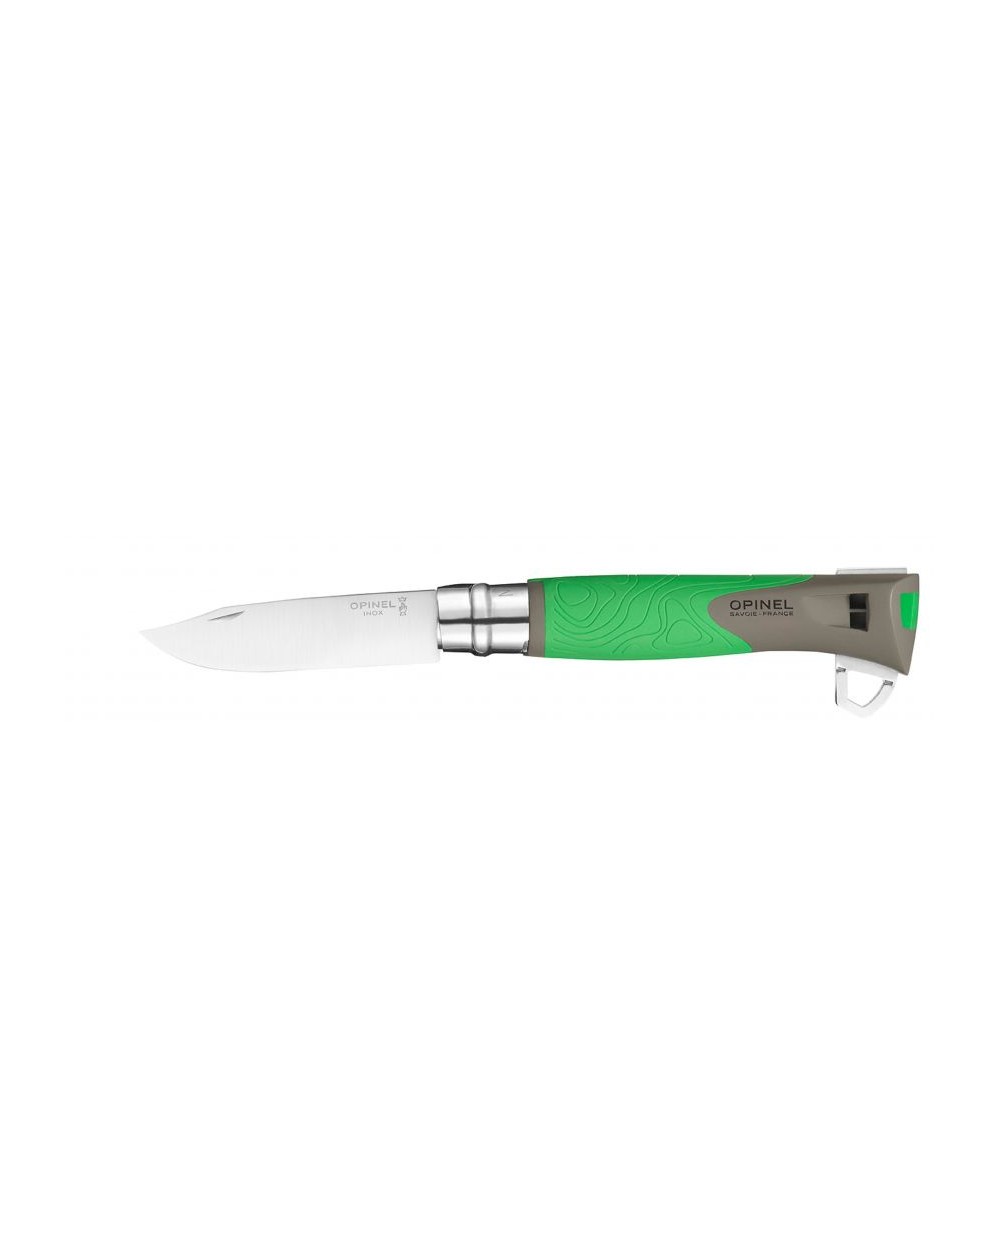 Couteau Opinel n°12 Explore vert pour la survie et la chasse